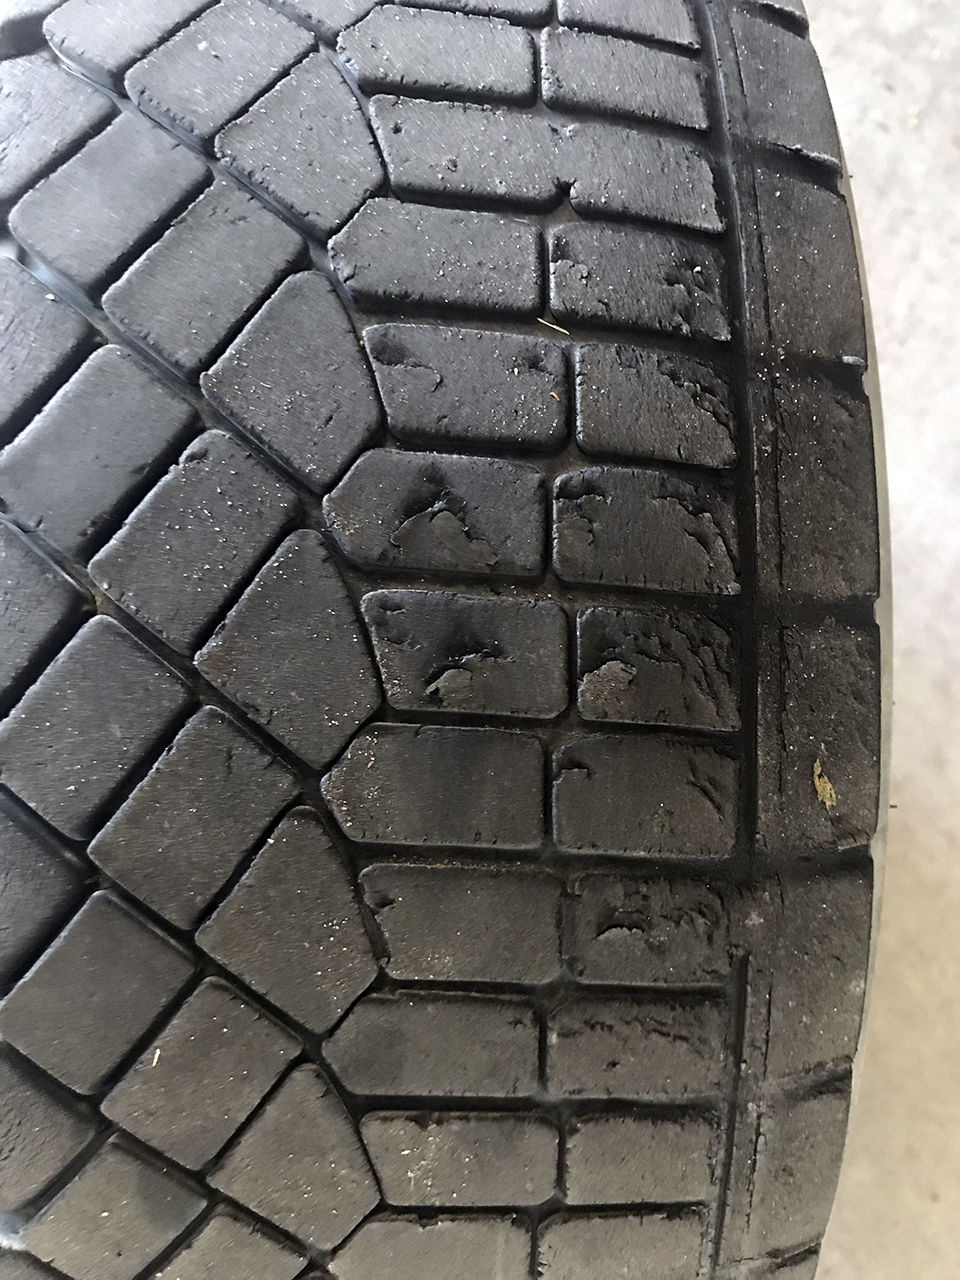 Worn Tires